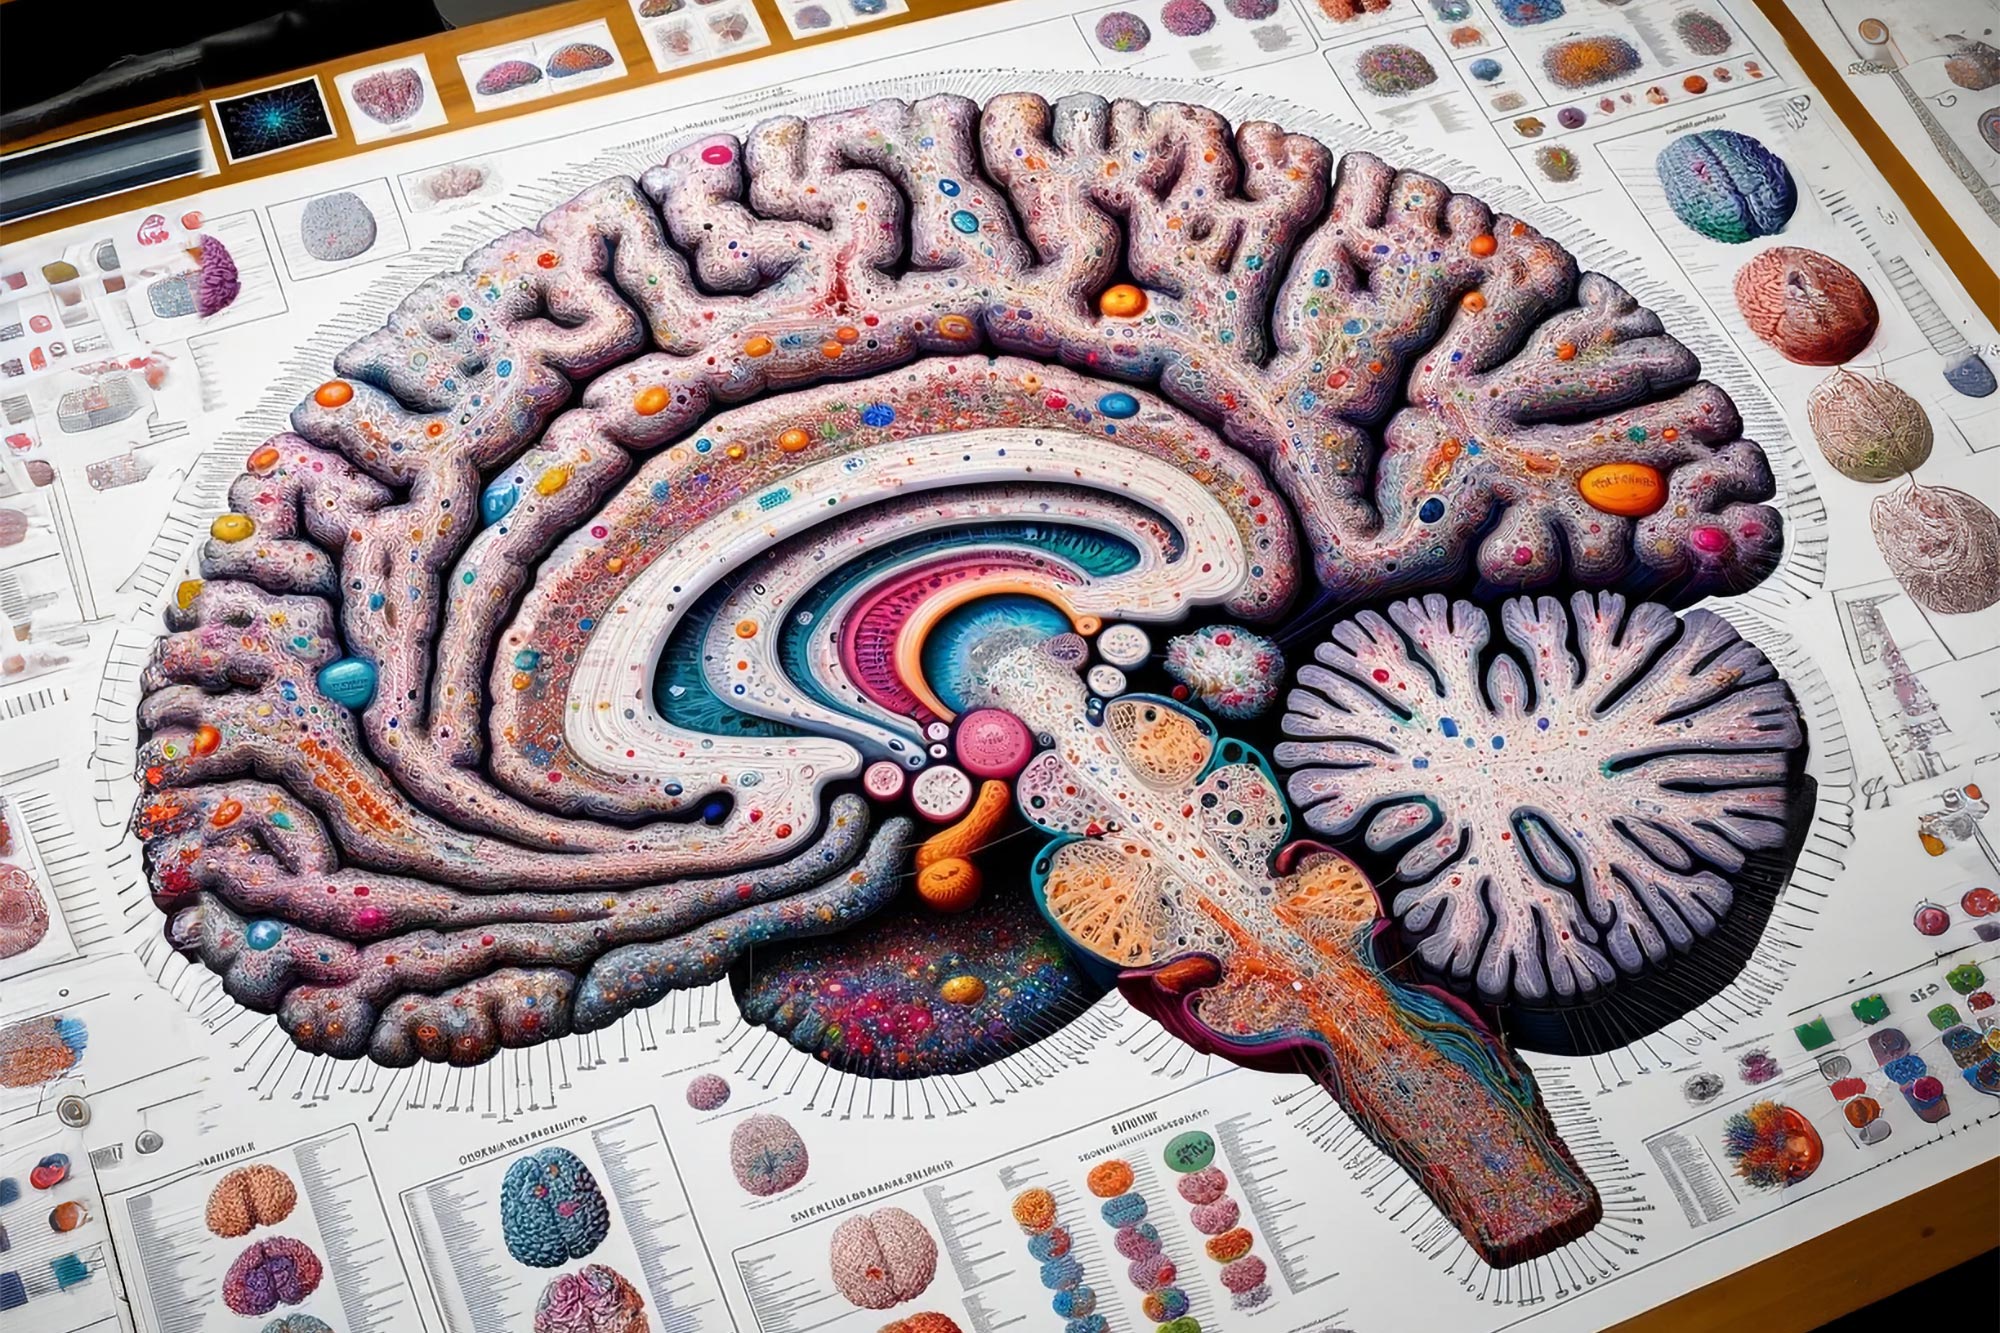 Rozszyfrowanie zaburzeń neuropsychiatrycznych za pomocą atlasu ludzkich komórek mózgowych